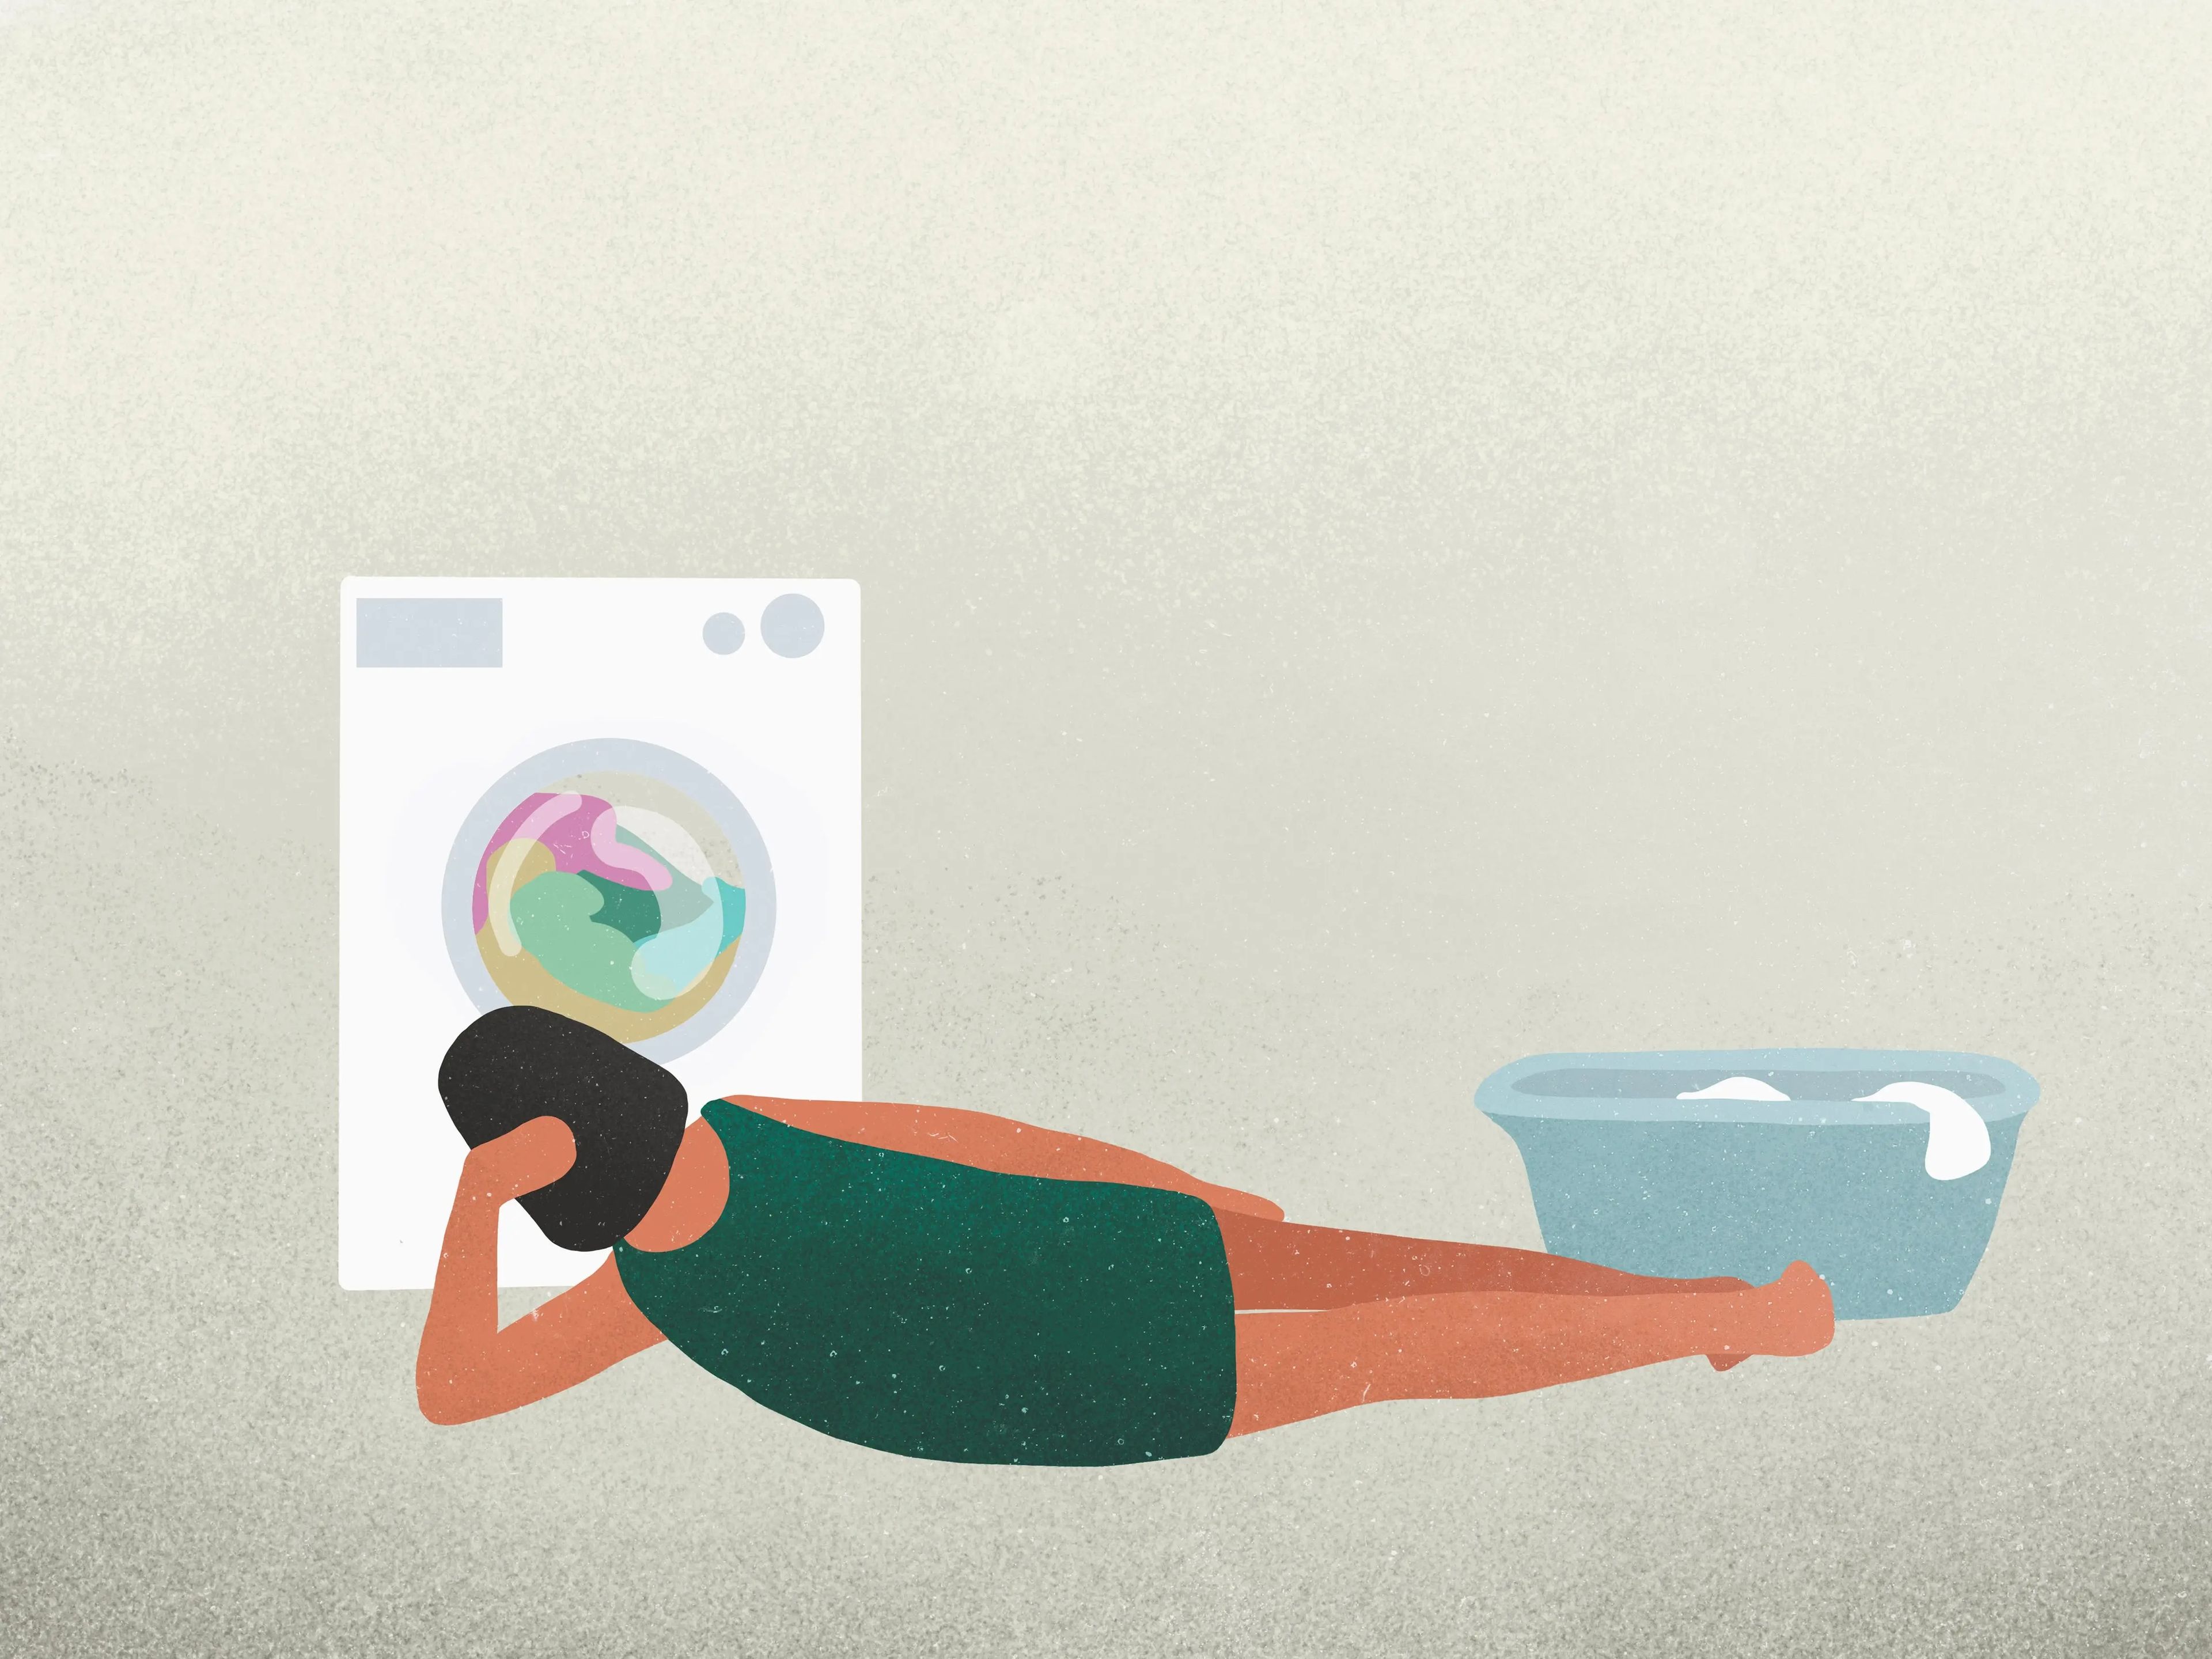 10 errores que cometes al lavar la ropa en casa y que podrías evitar